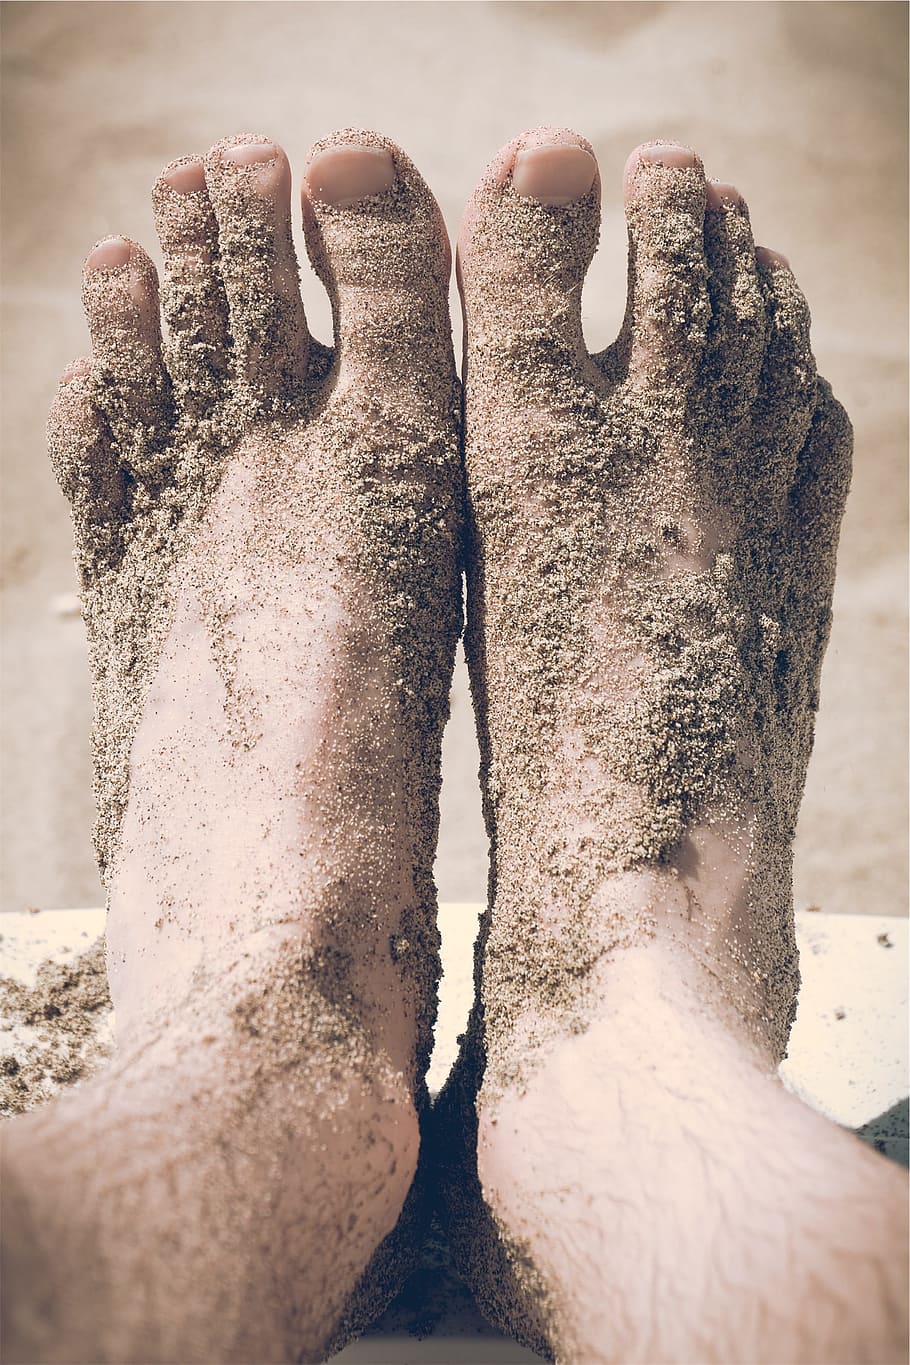 pés, com os pés descalços, dedos do pé, areia, praia, uma pessoa, parte do corpo humano, pessoas reais, perna humana, seção baixa